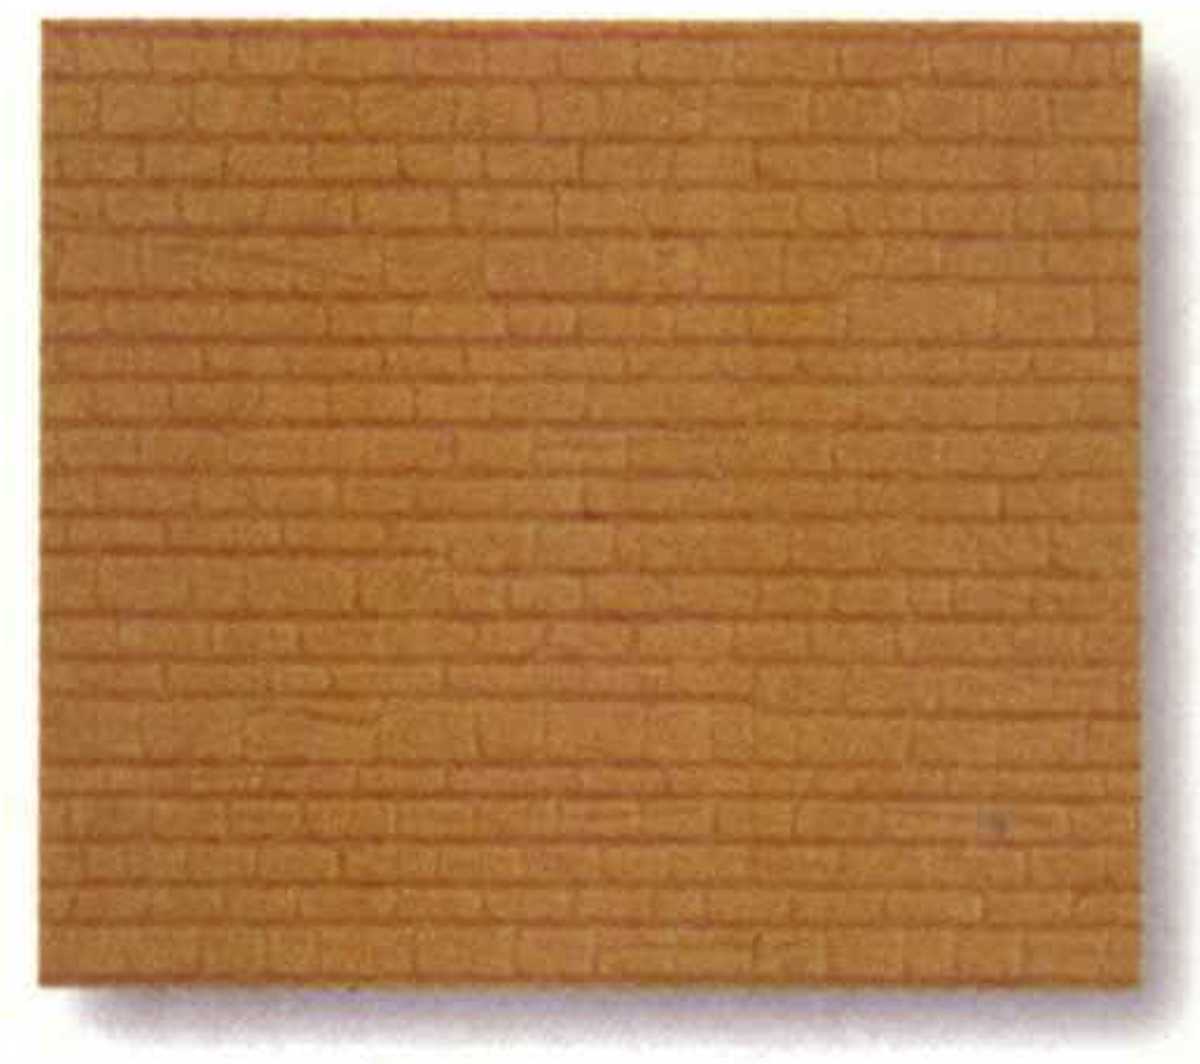 Kibri 34118 - Mauerplatte mit Abdecksteinen, 20x12 cm